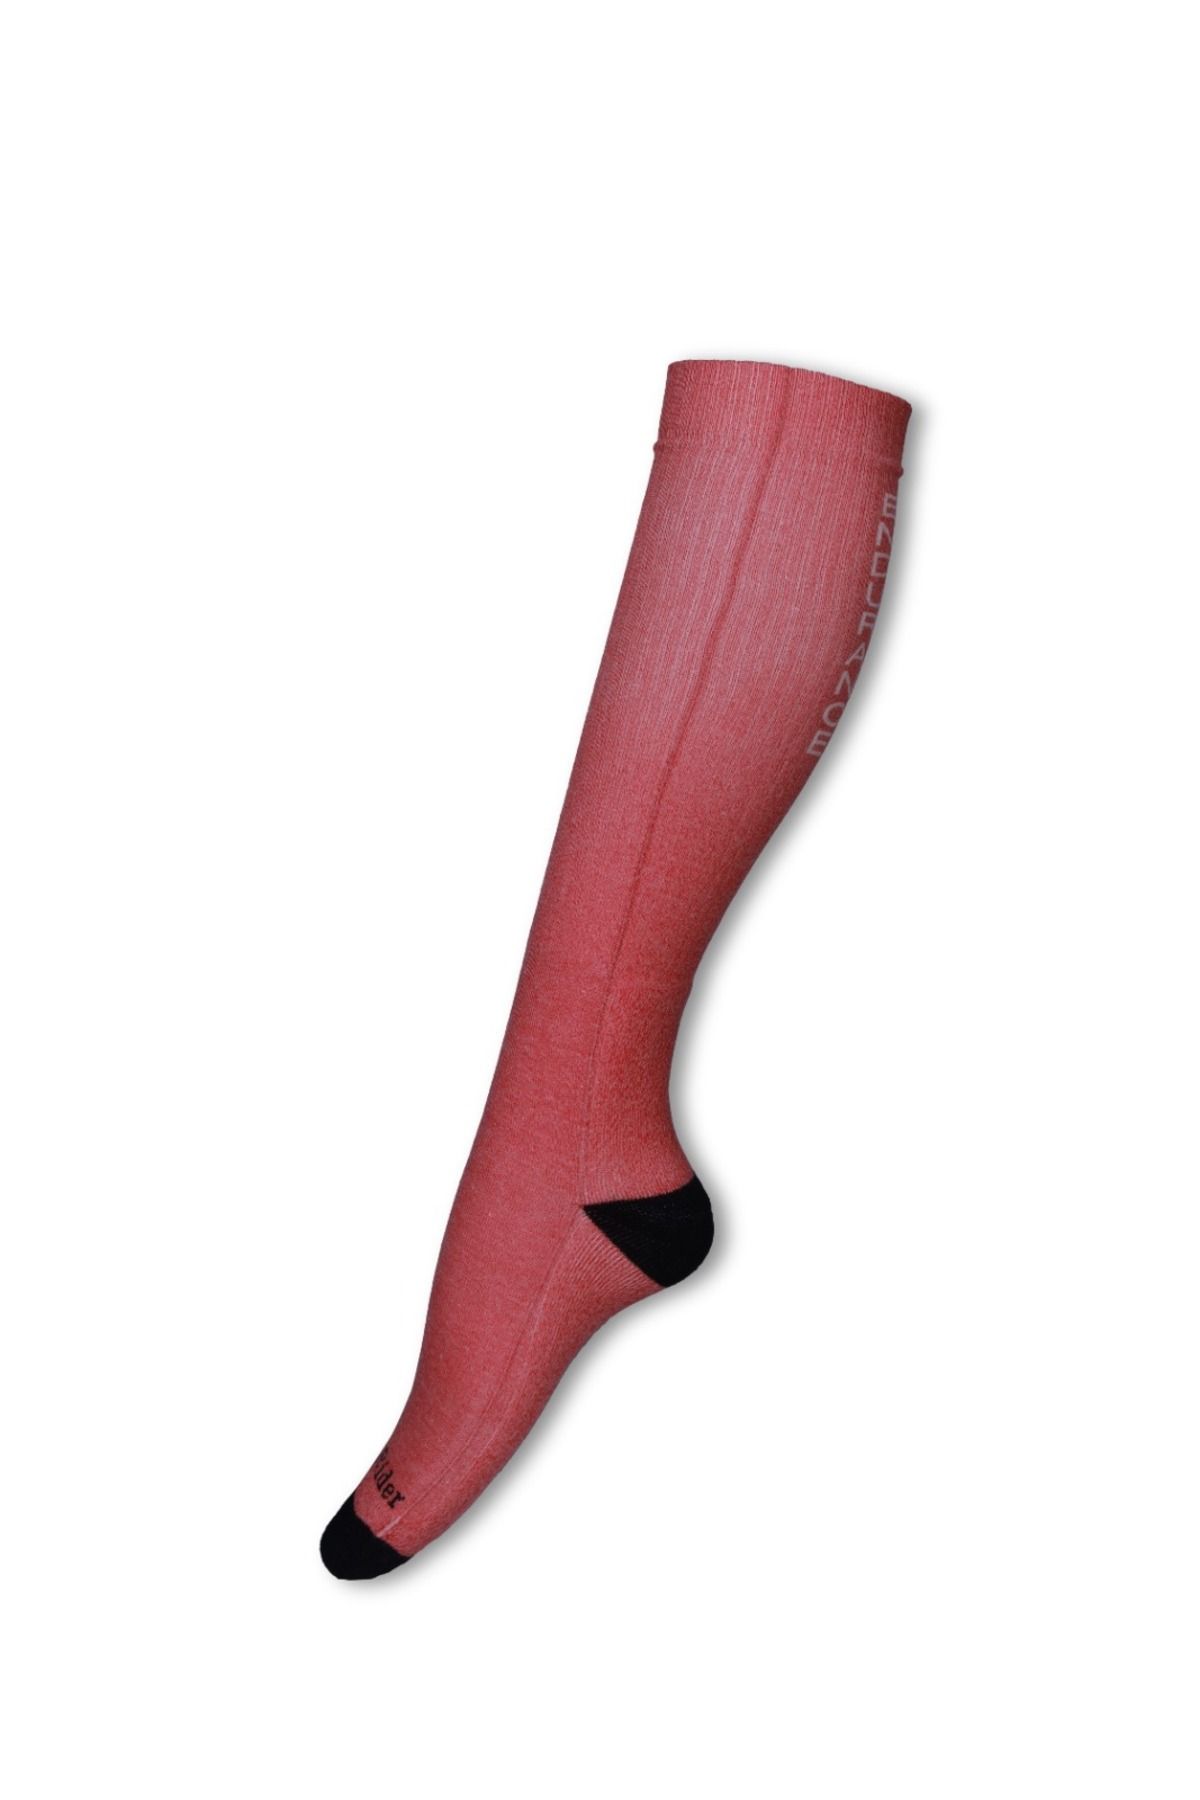 CANTERİDER Canterider Pembe Renk Endurance Yazılı Binici Çorabı